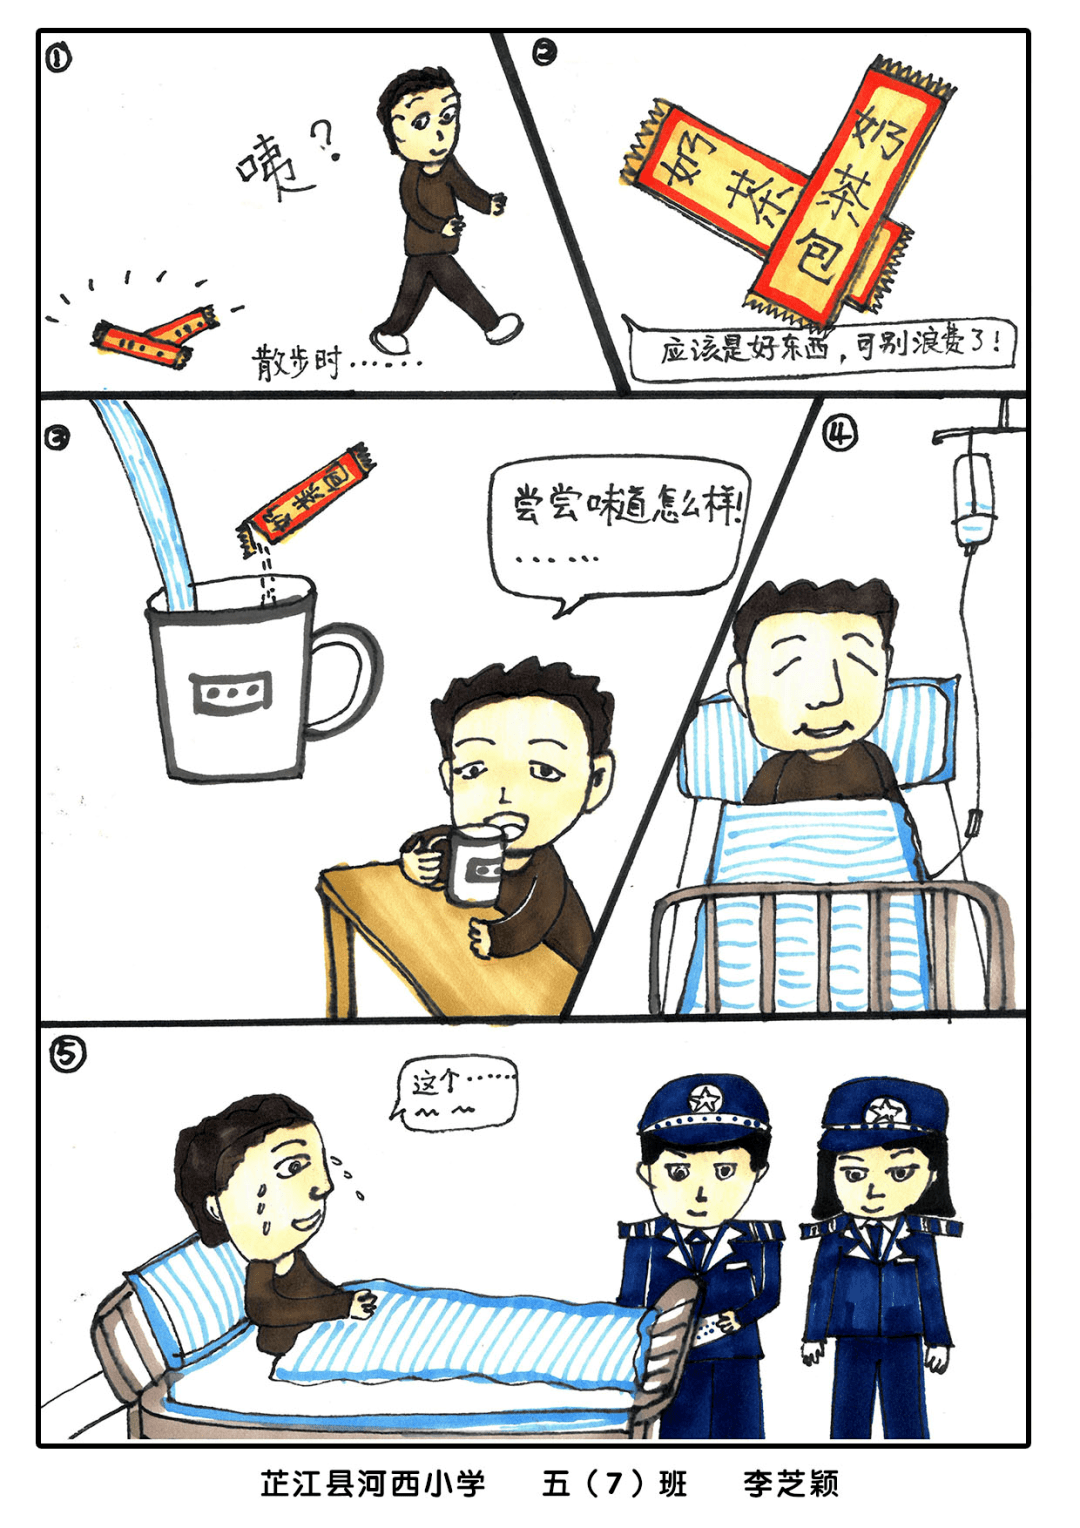 【芷江】河西小学手绘禁毒漫画 呼吁青春不"毒"行